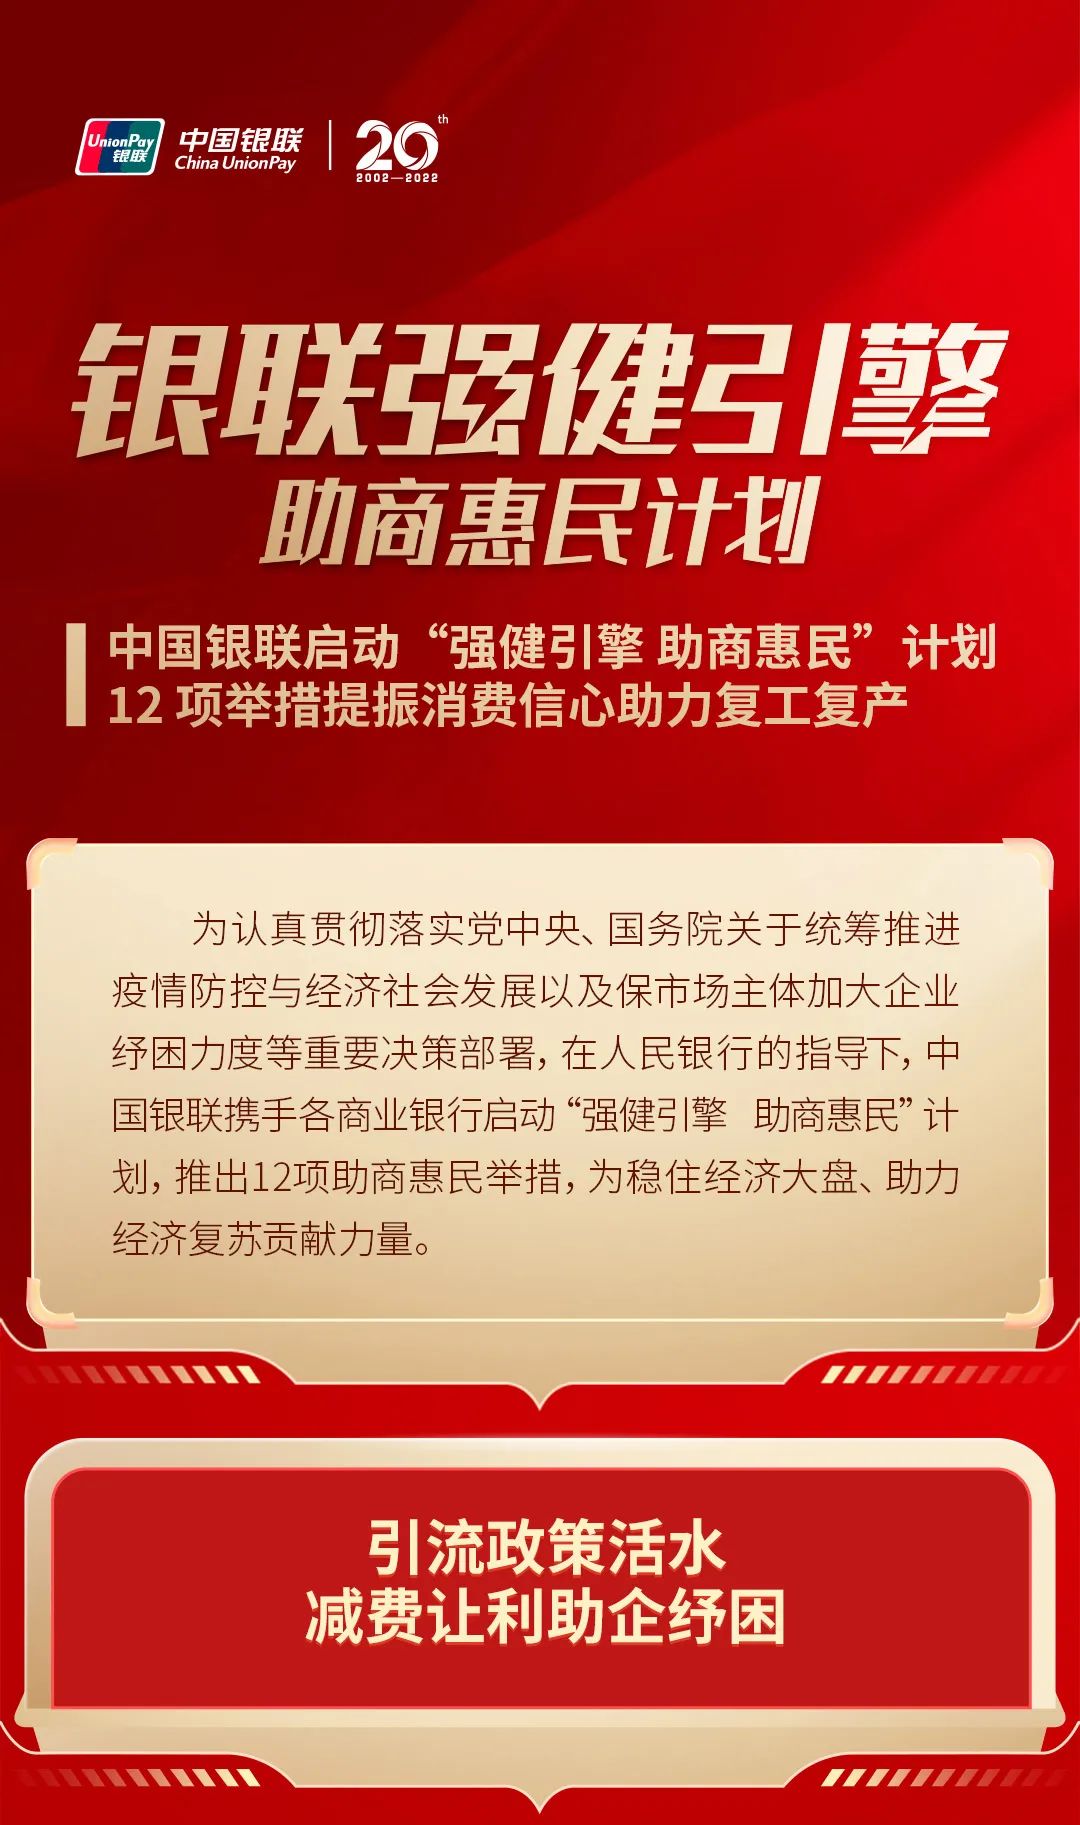 中国银联启动“强健引擎 助商惠民”计划 12项举措提振消费信心助力复工复产